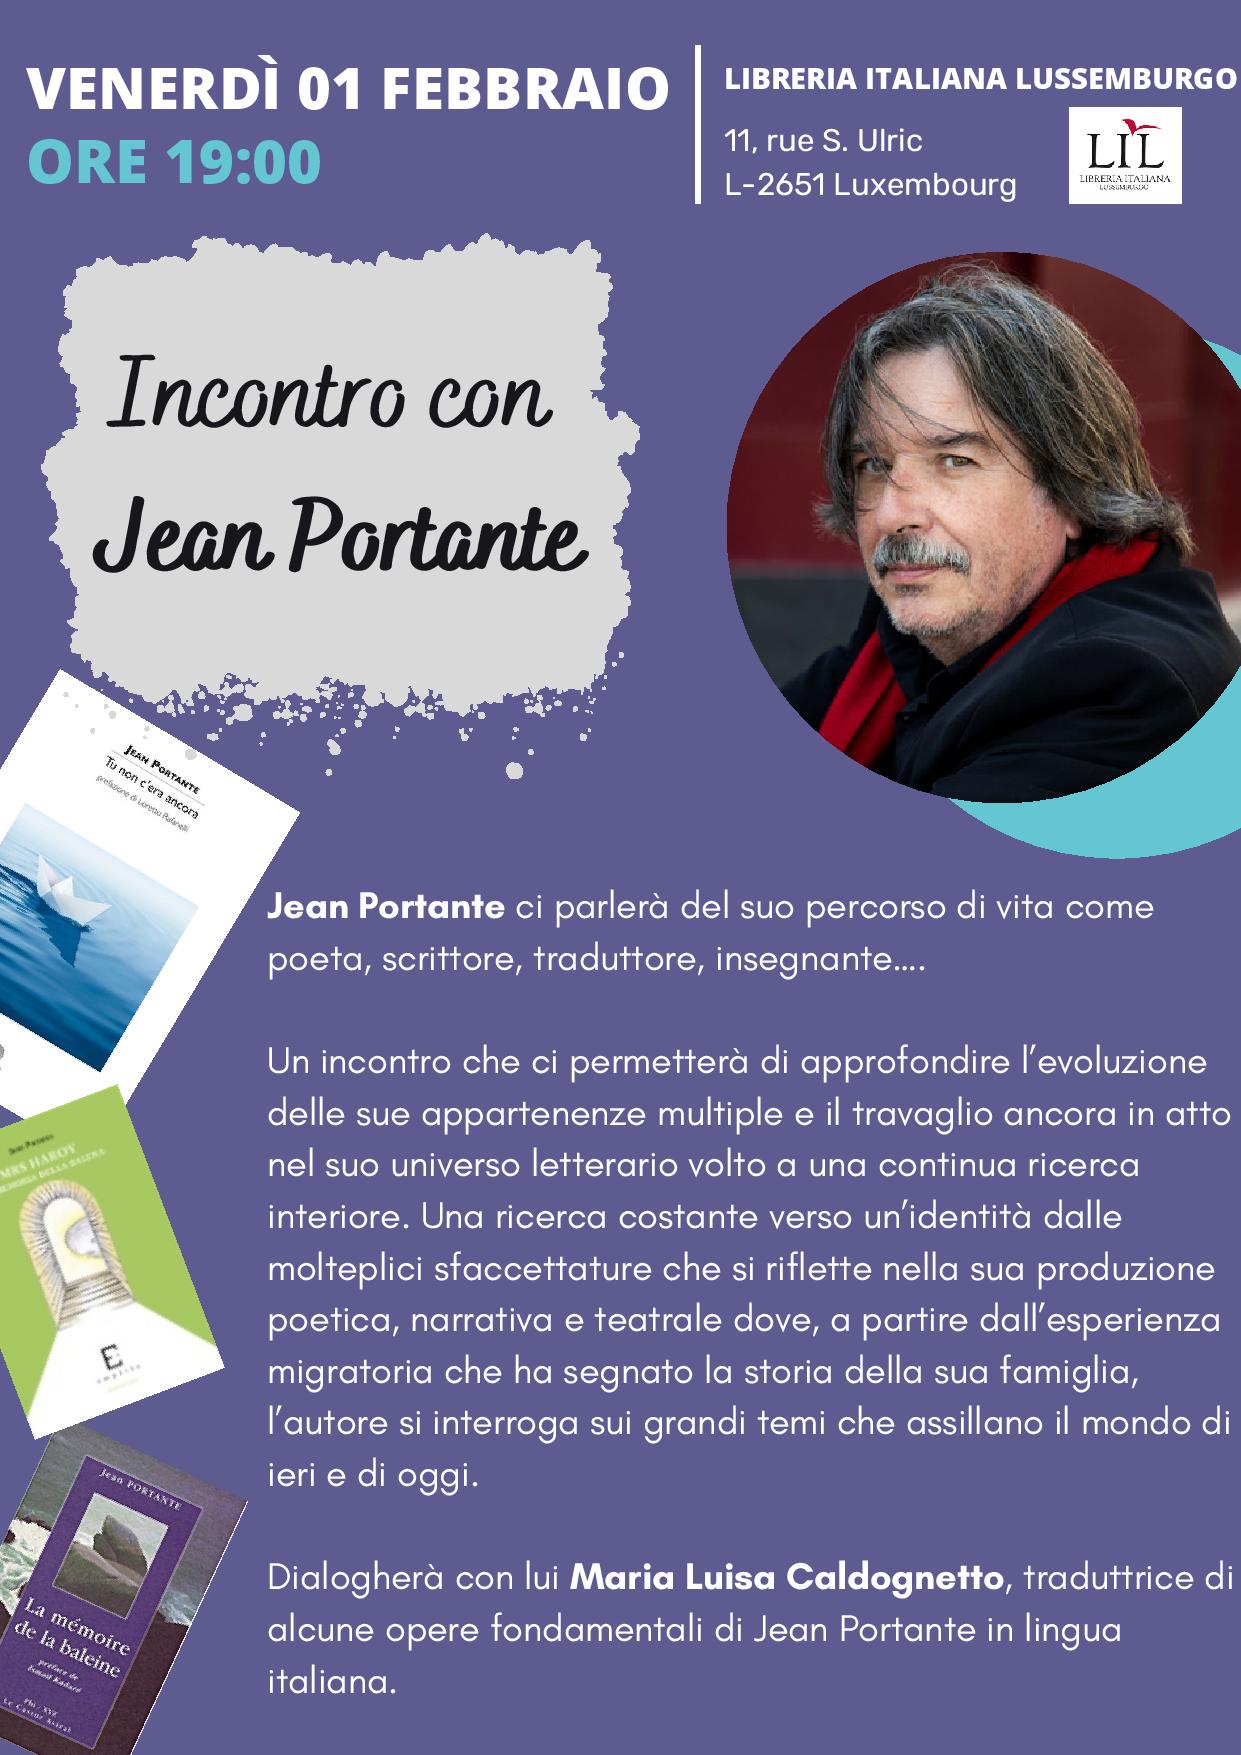 Incontro con Jean Portante